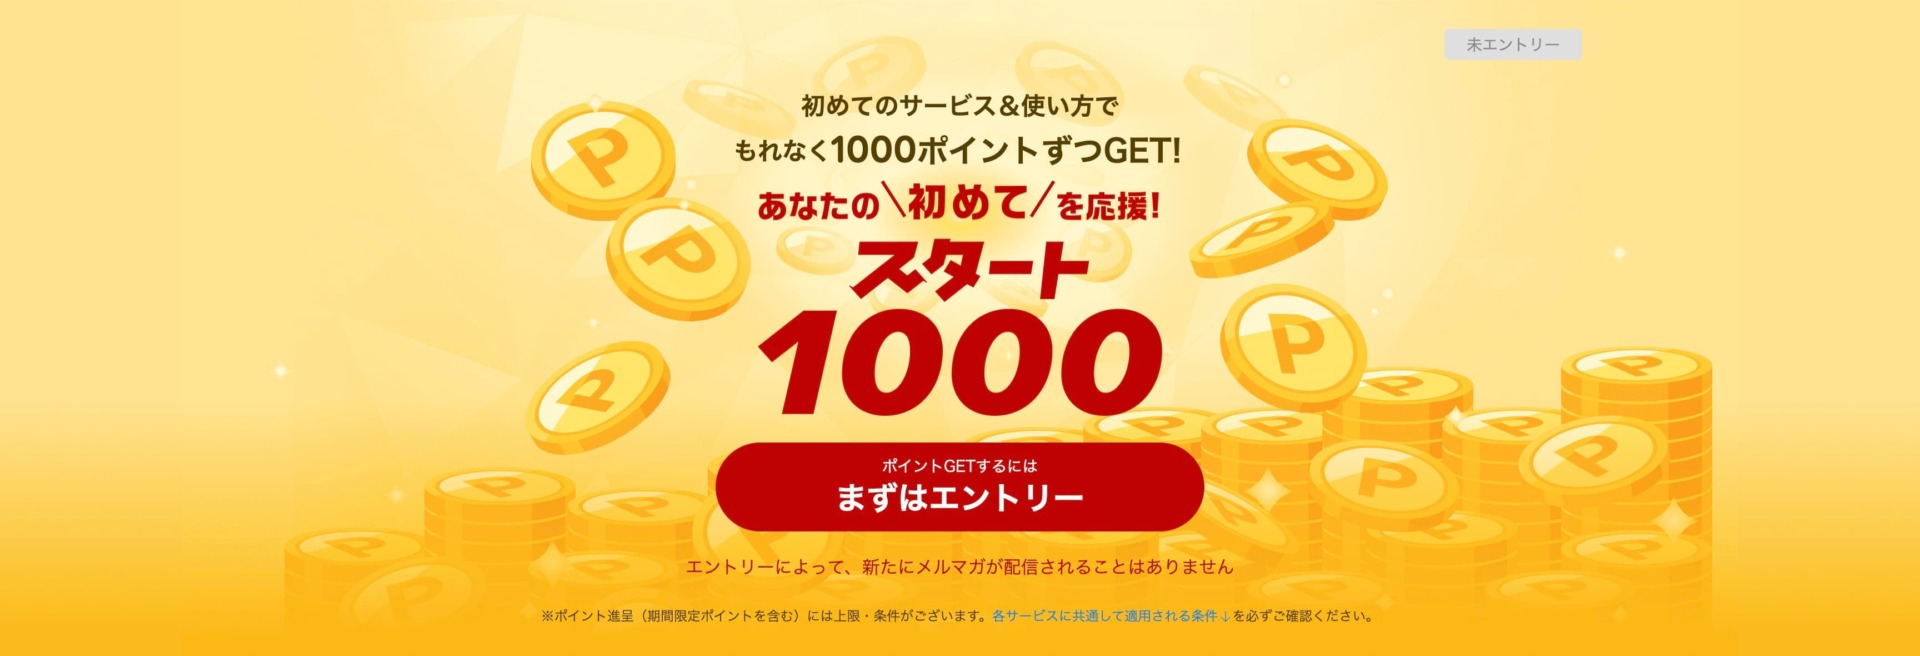 【初回限定】1000円分の楽天ポイントがもらえるキャンペーン